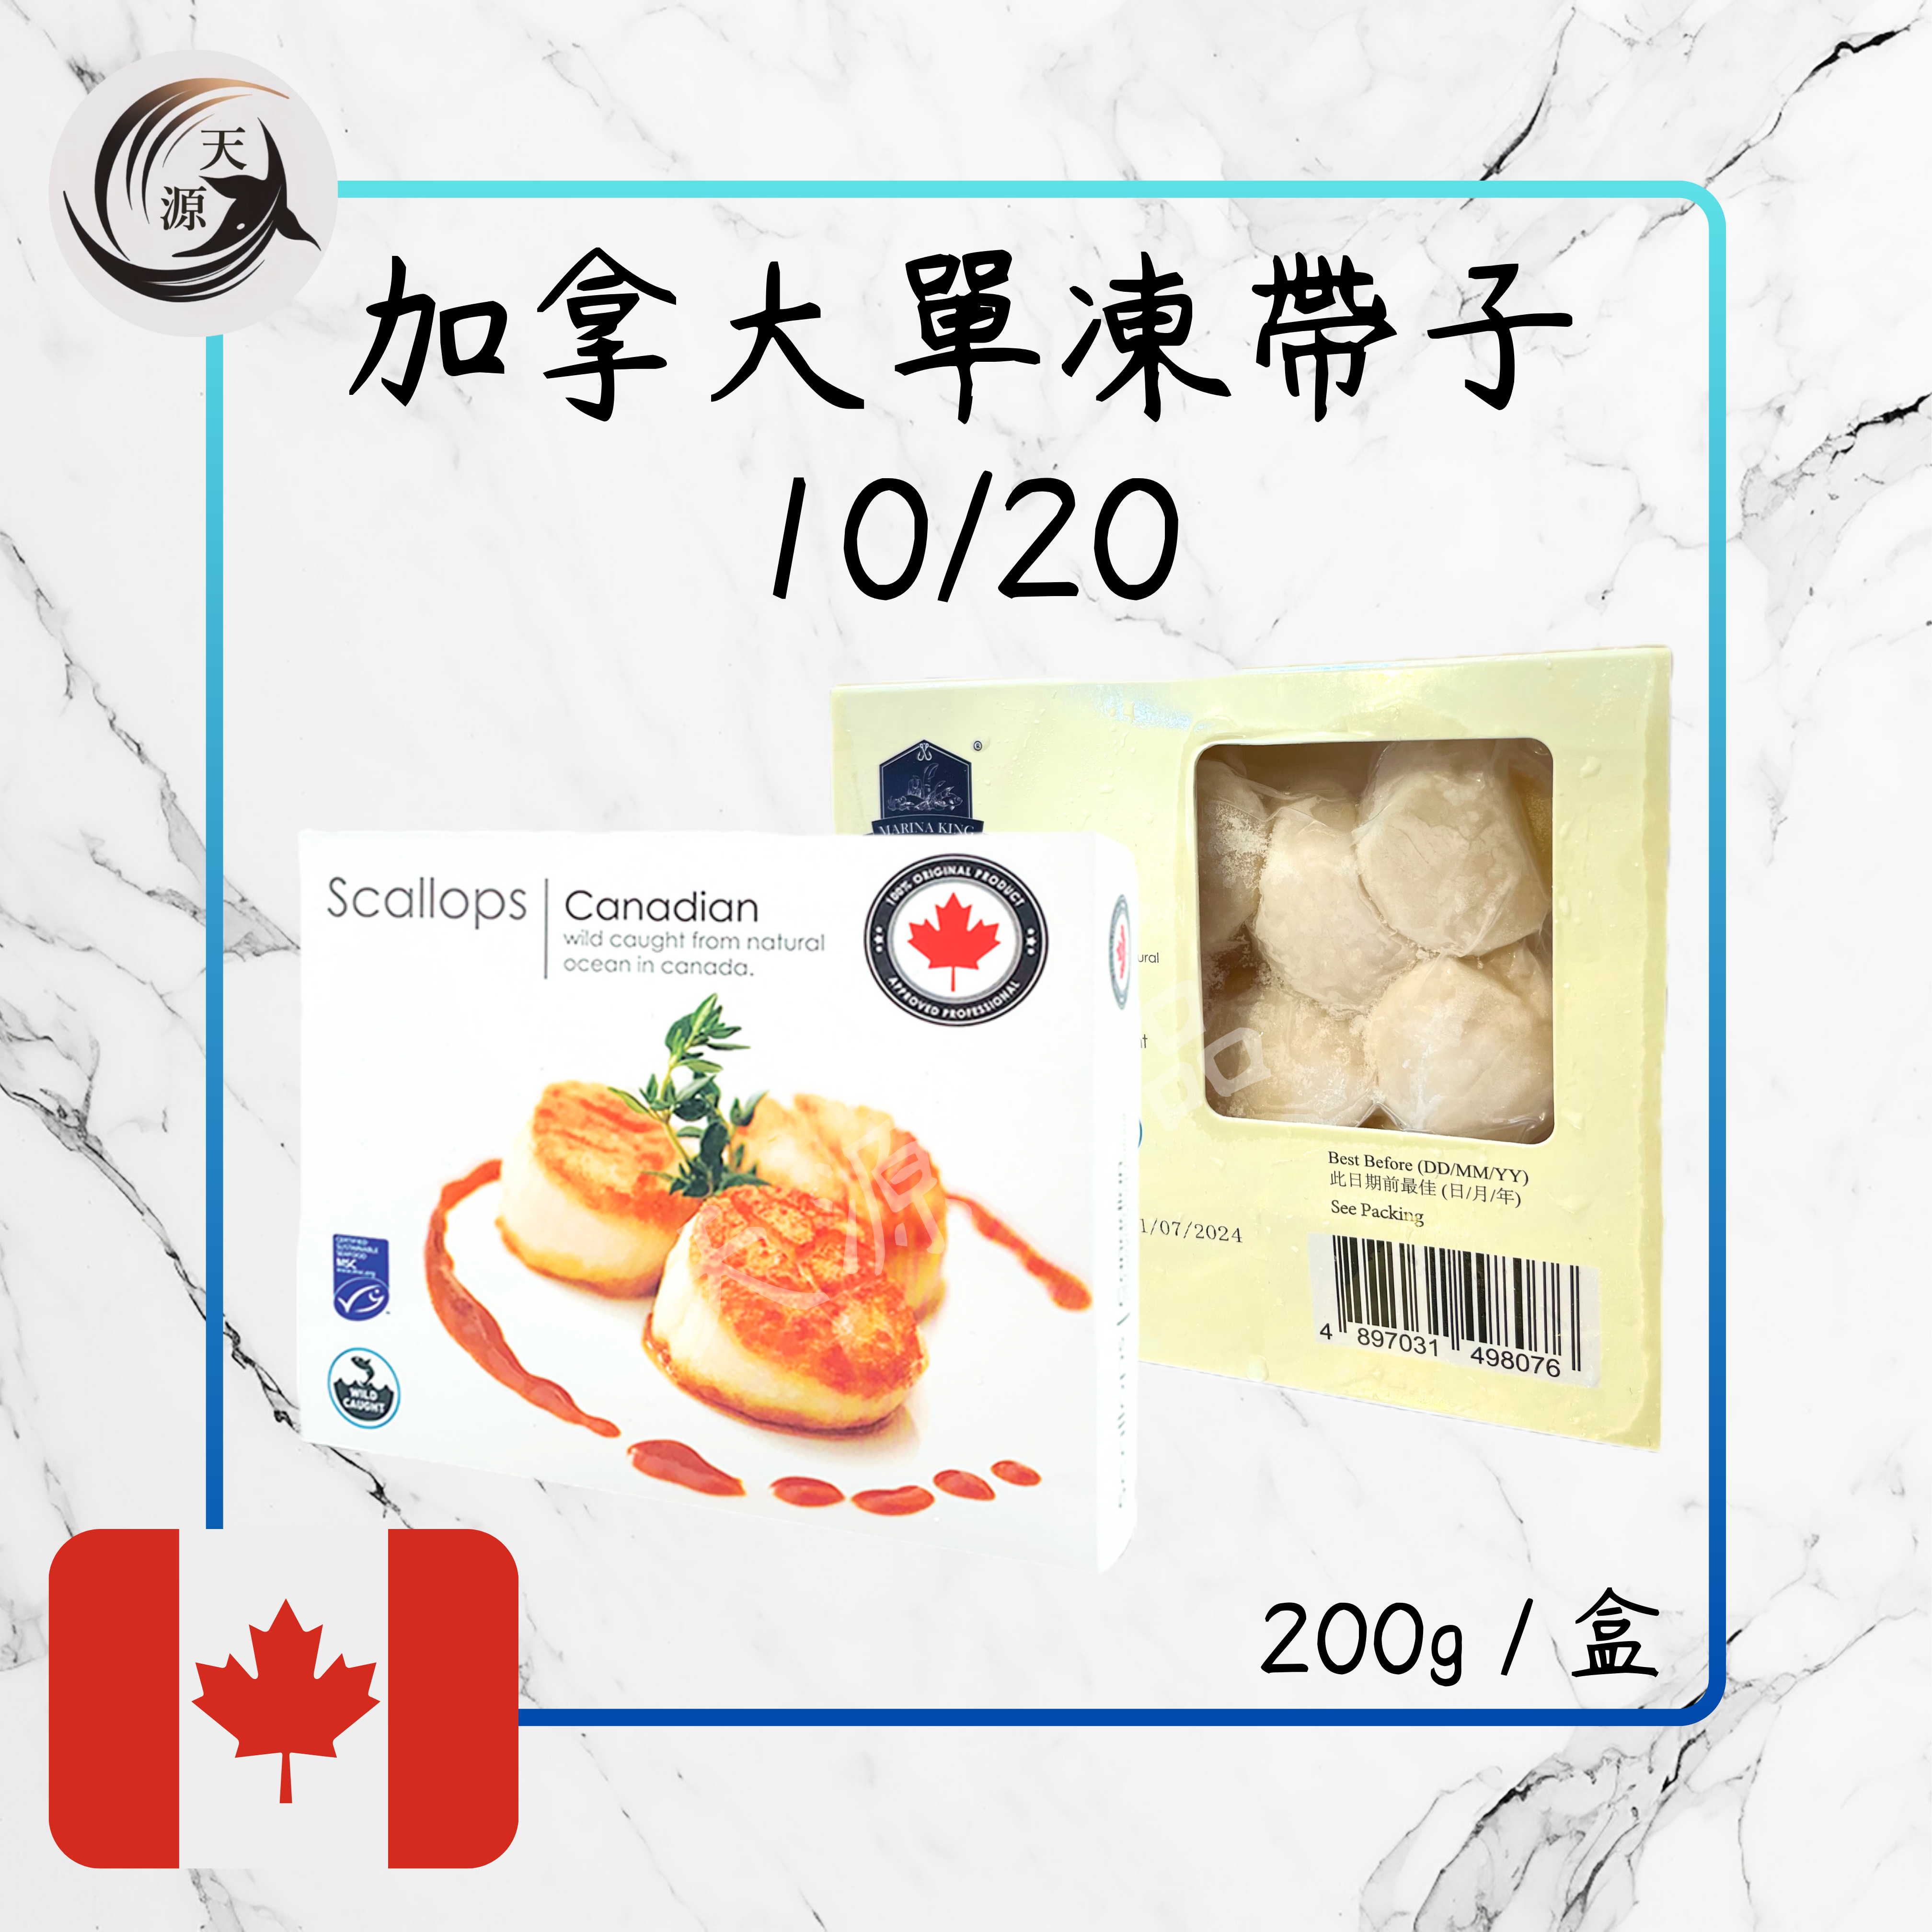 Canadian single frozen scallops 10/20 200g